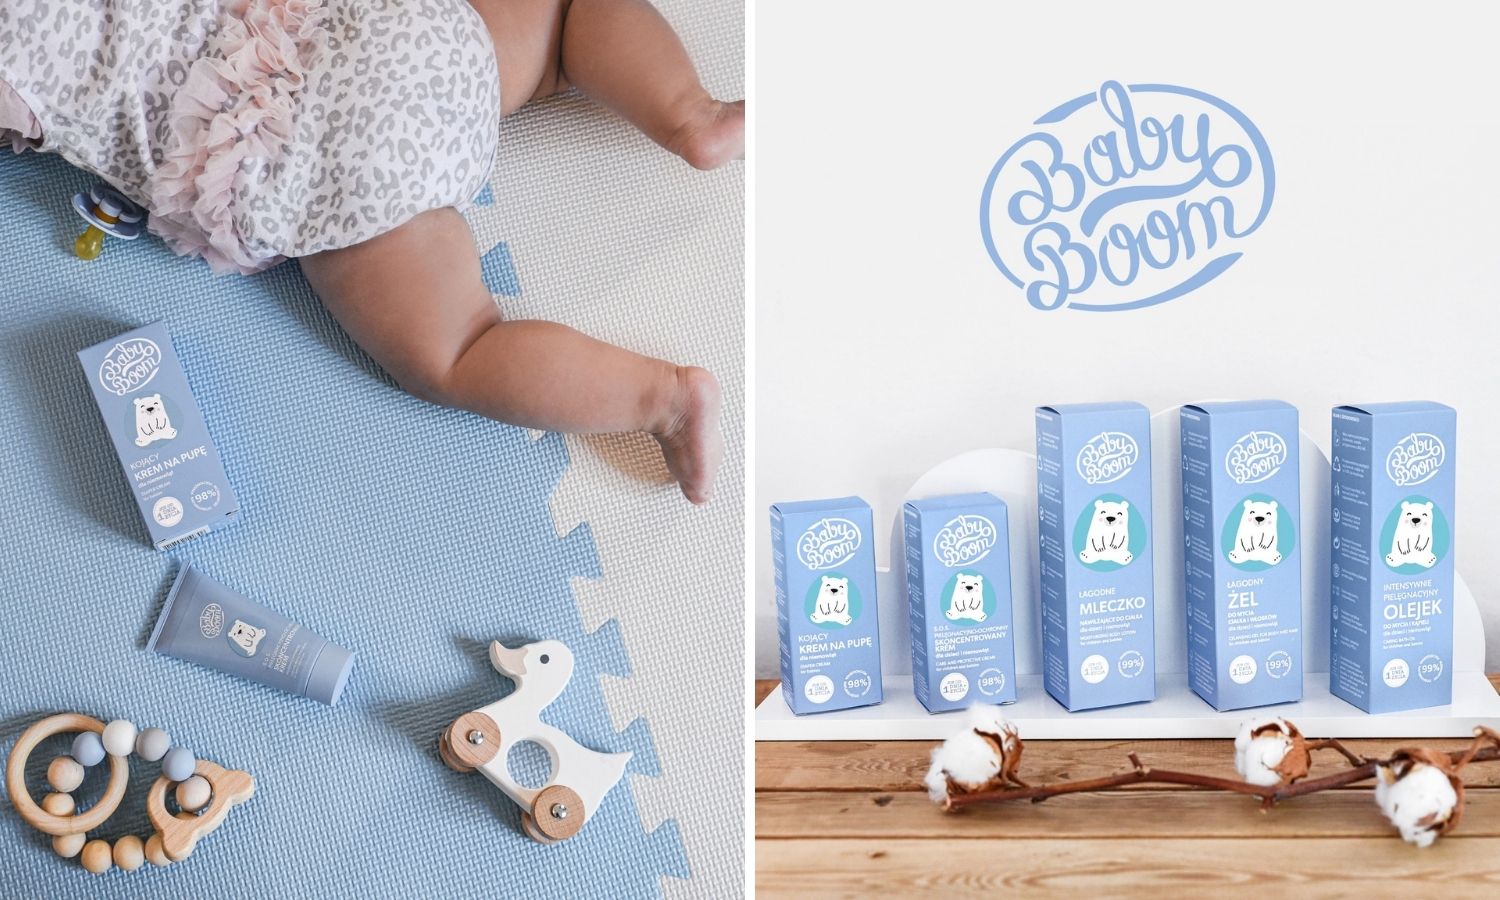 Babyboom kosmetyki dla dzieci i niemowląt